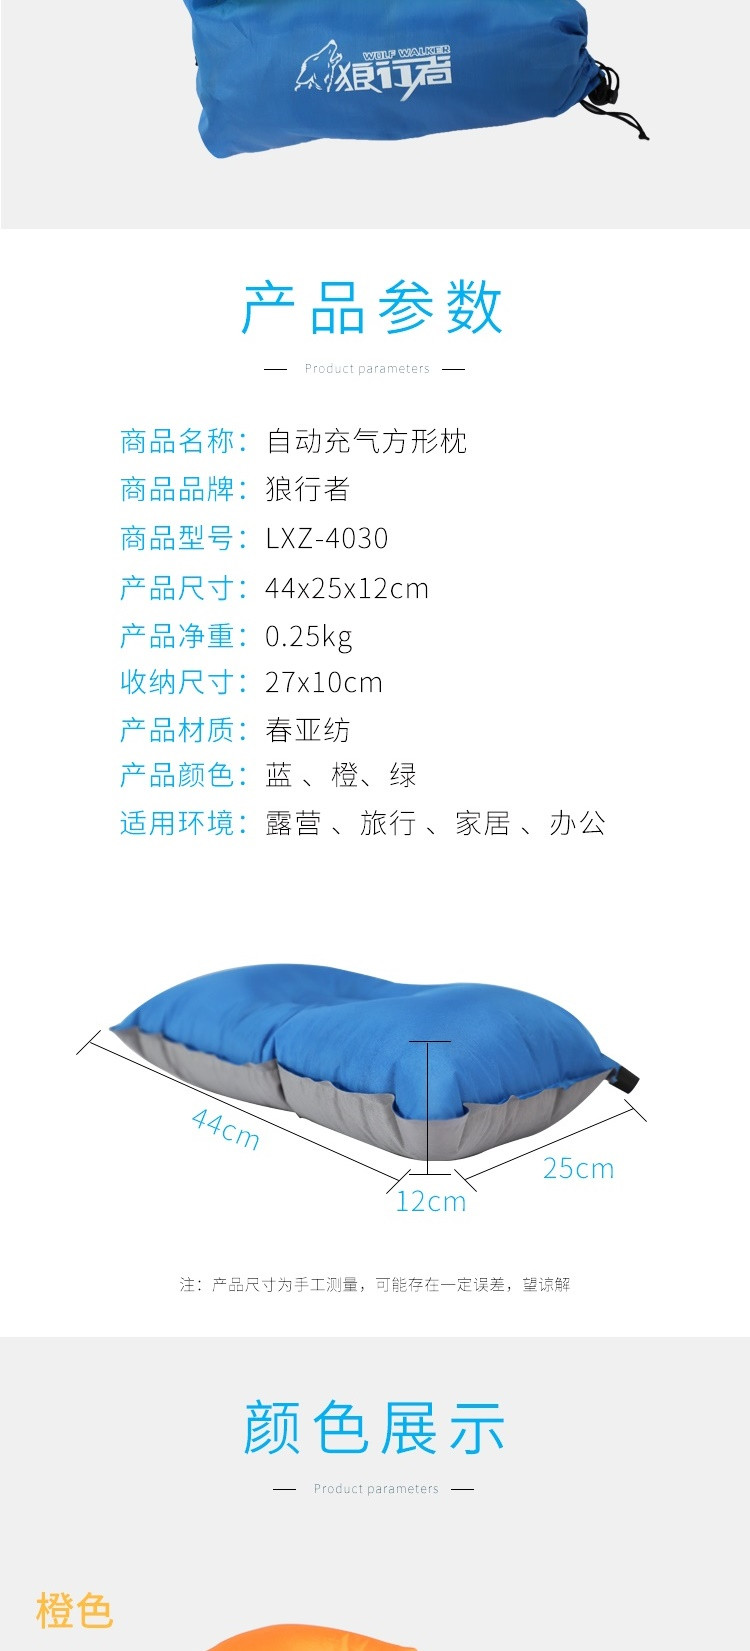 狼行者 自动充气枕头LXZ-4030 旅行枕 便携舒适午睡露营睡枕